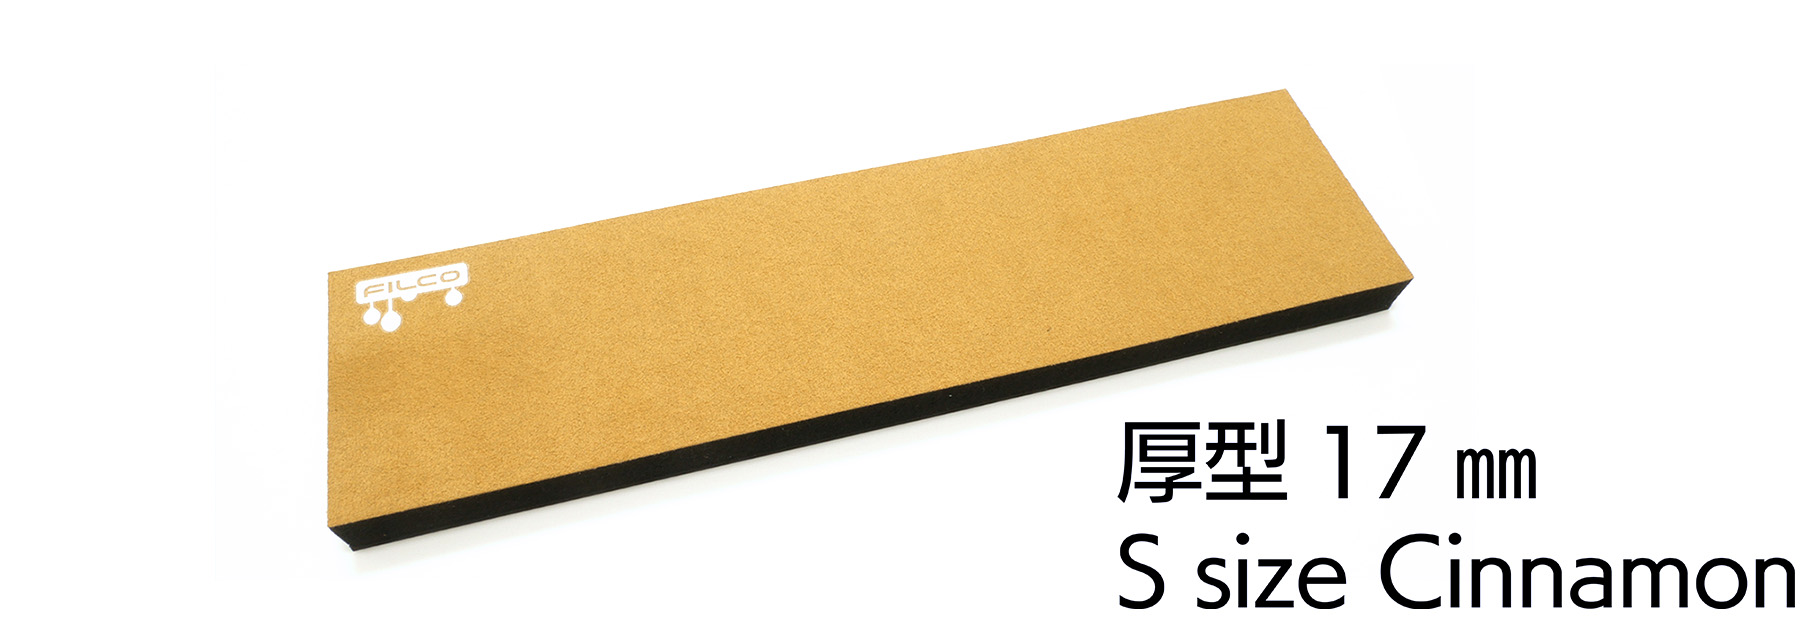 FILCO Majestouch Wrist Rest "Macaron" 厚型17mm・Sサイズ・Cinnamon【アウトレット品】